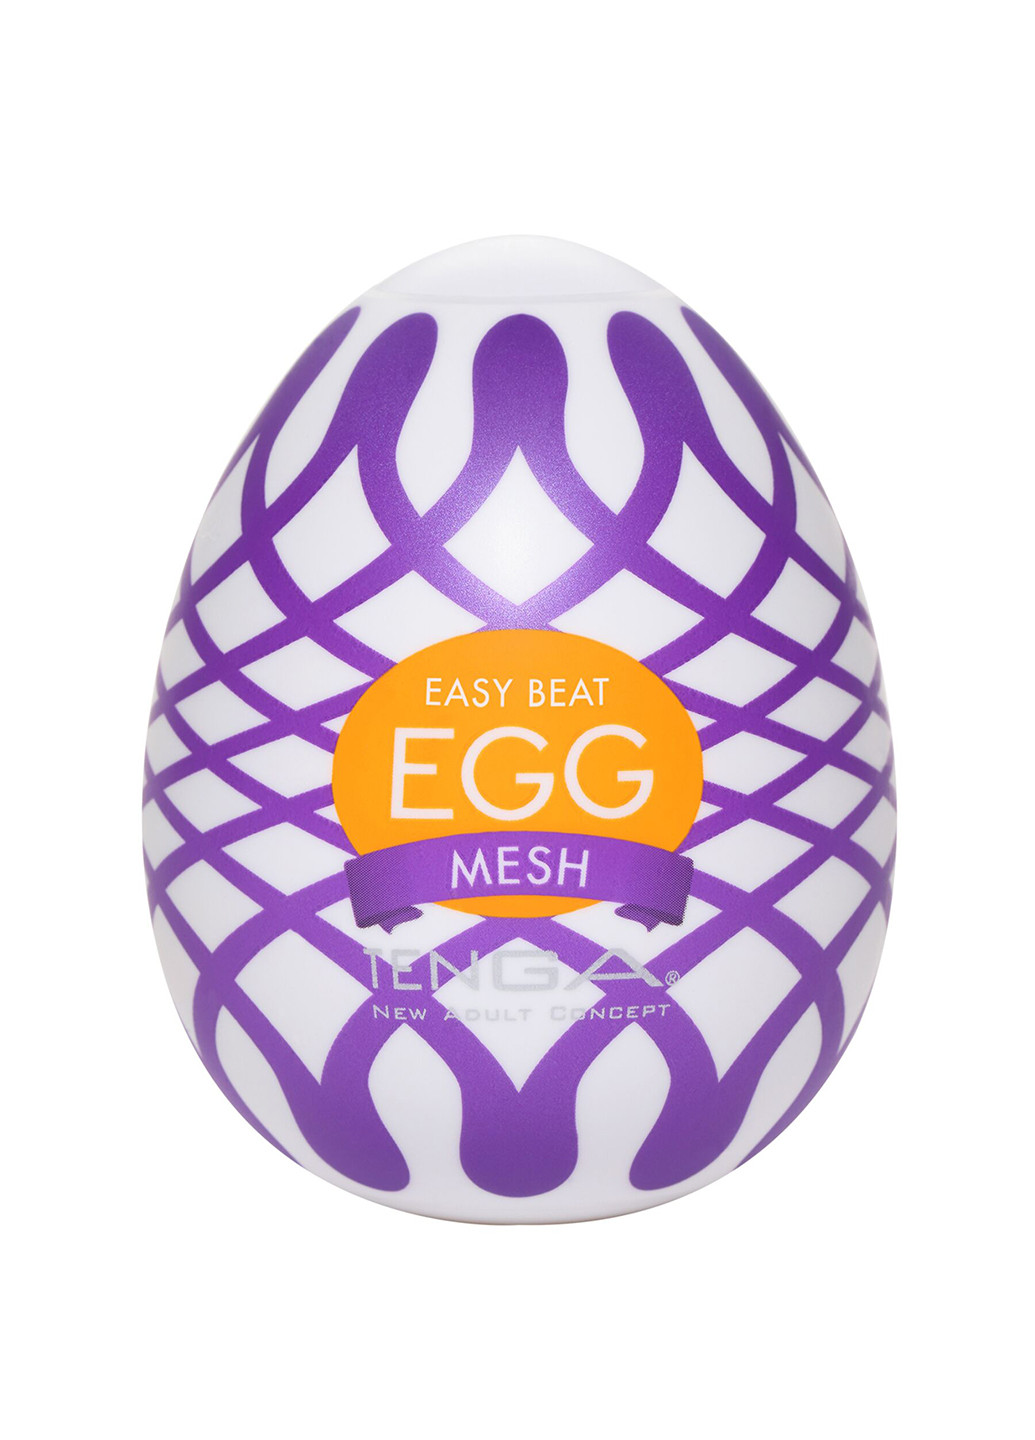 Мастурбатор-яйцо Egg Mesh с сетчатым рельефом Tenga (254151610)